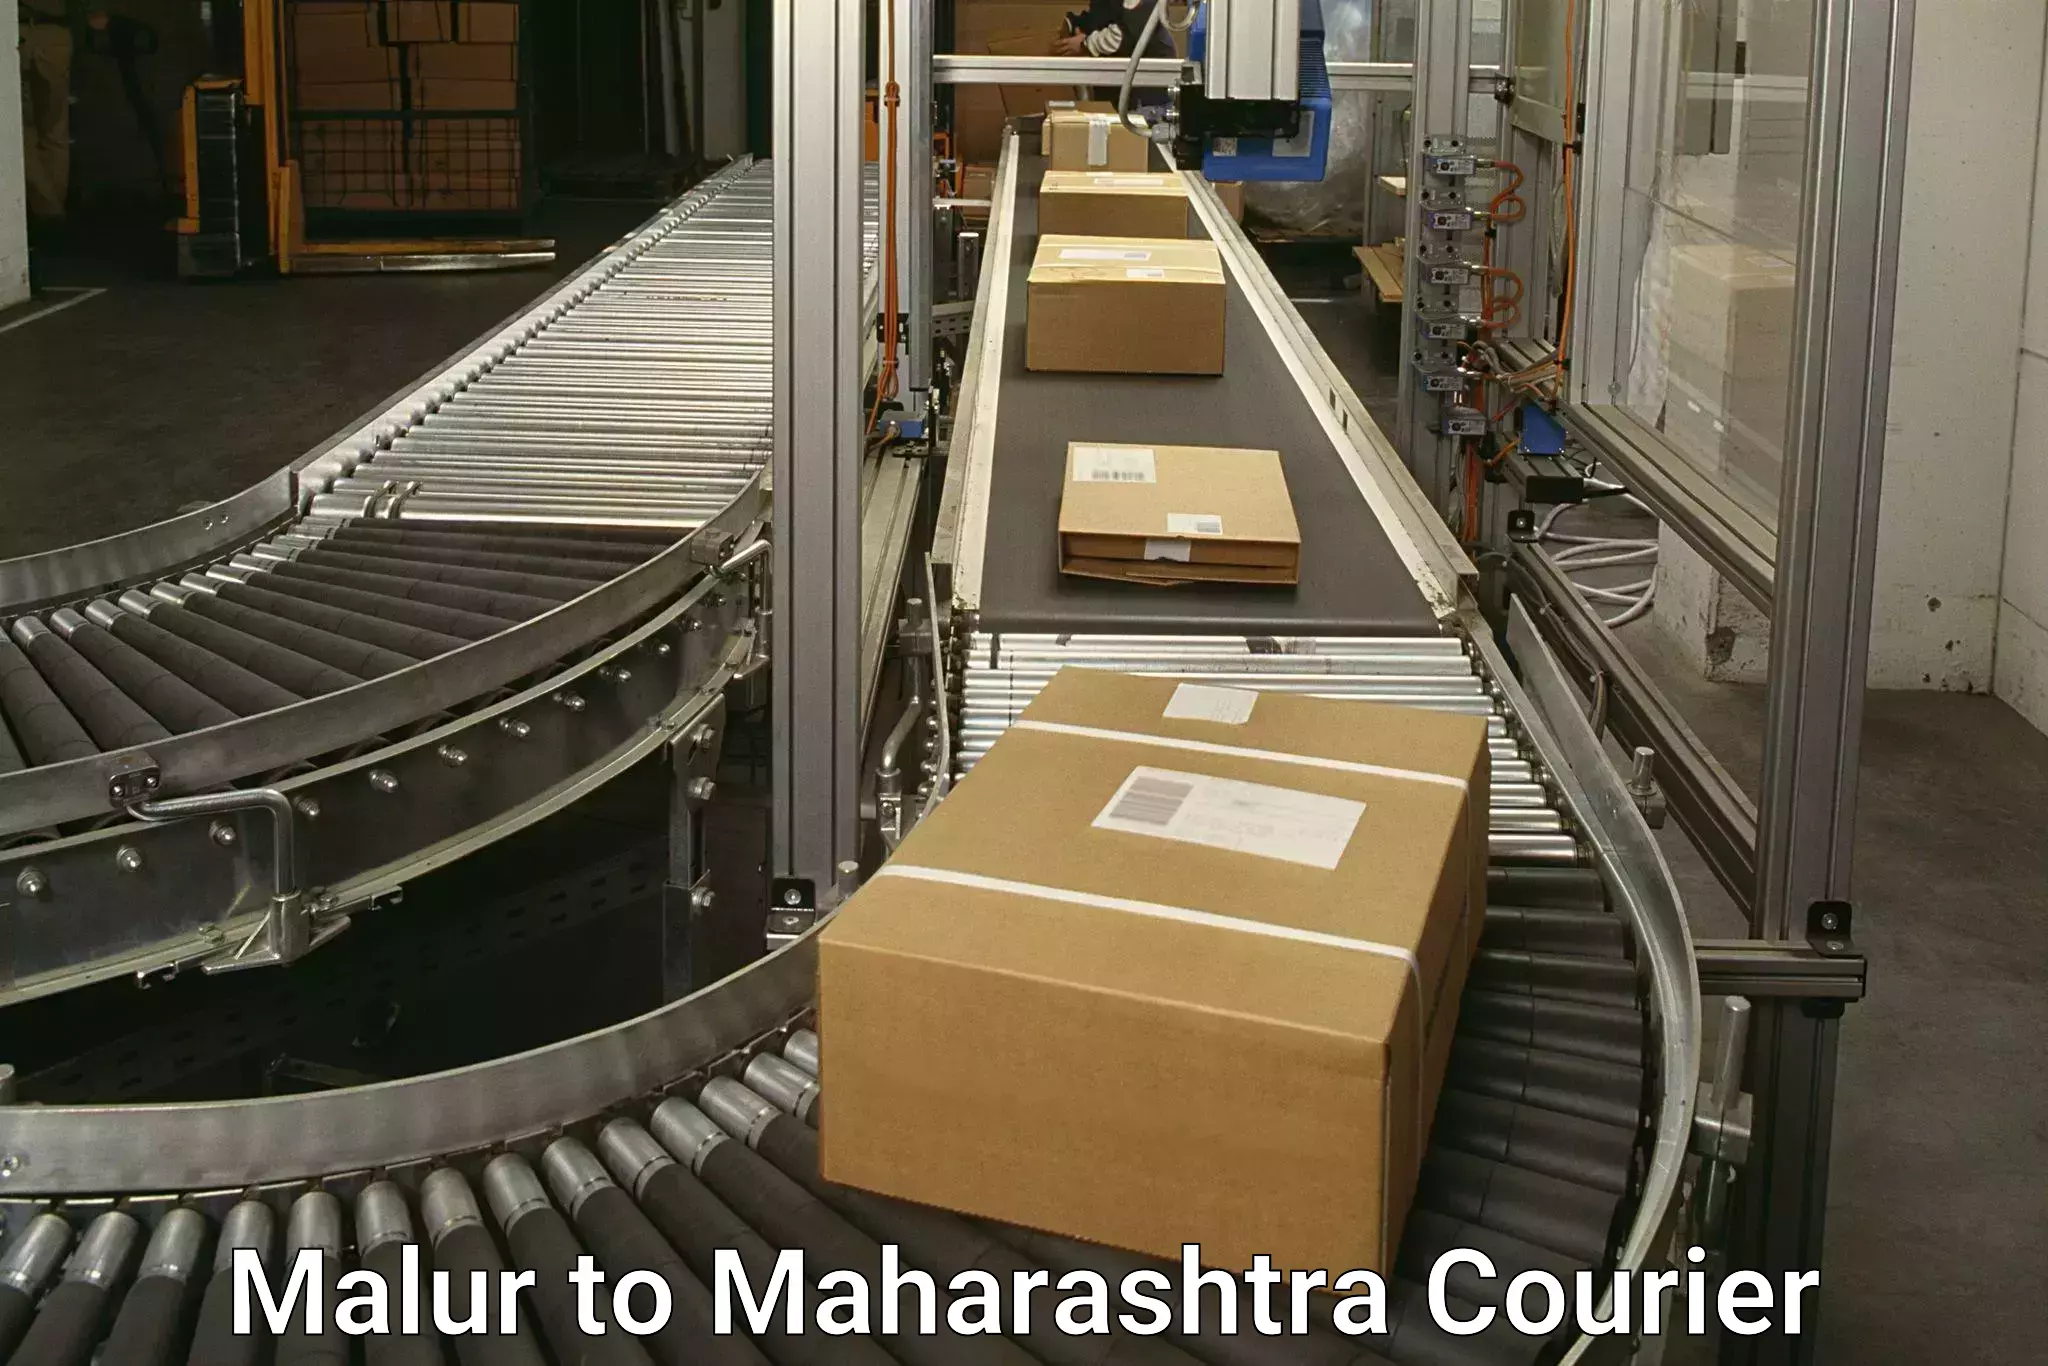 Courier service comparison Malur to Maharashtra